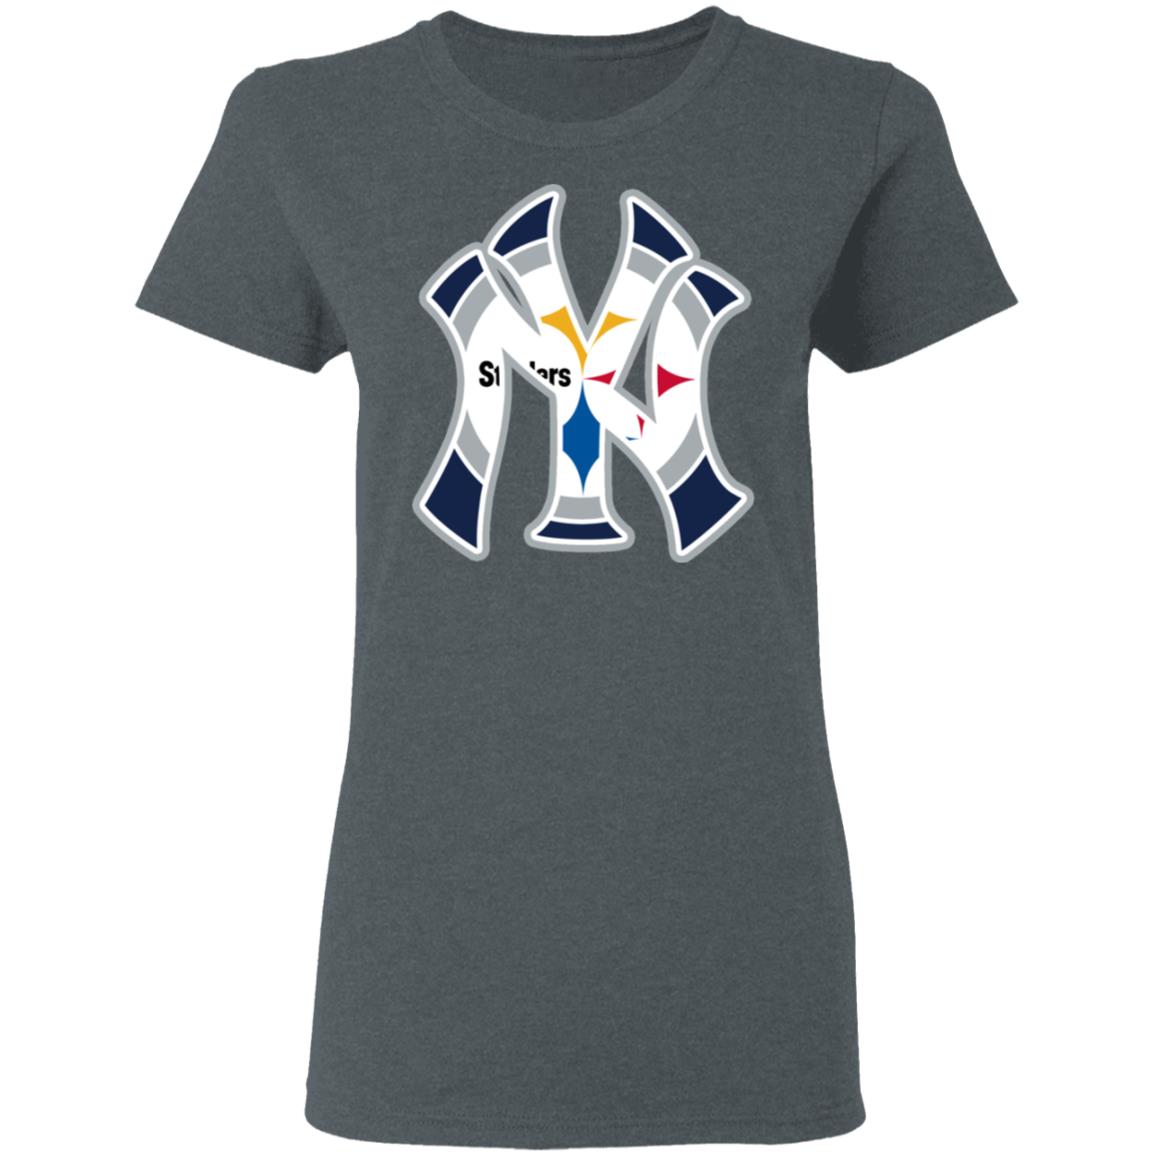 Brett Gardner Shirt New York Yankees Women's V-Neck T-Shirt